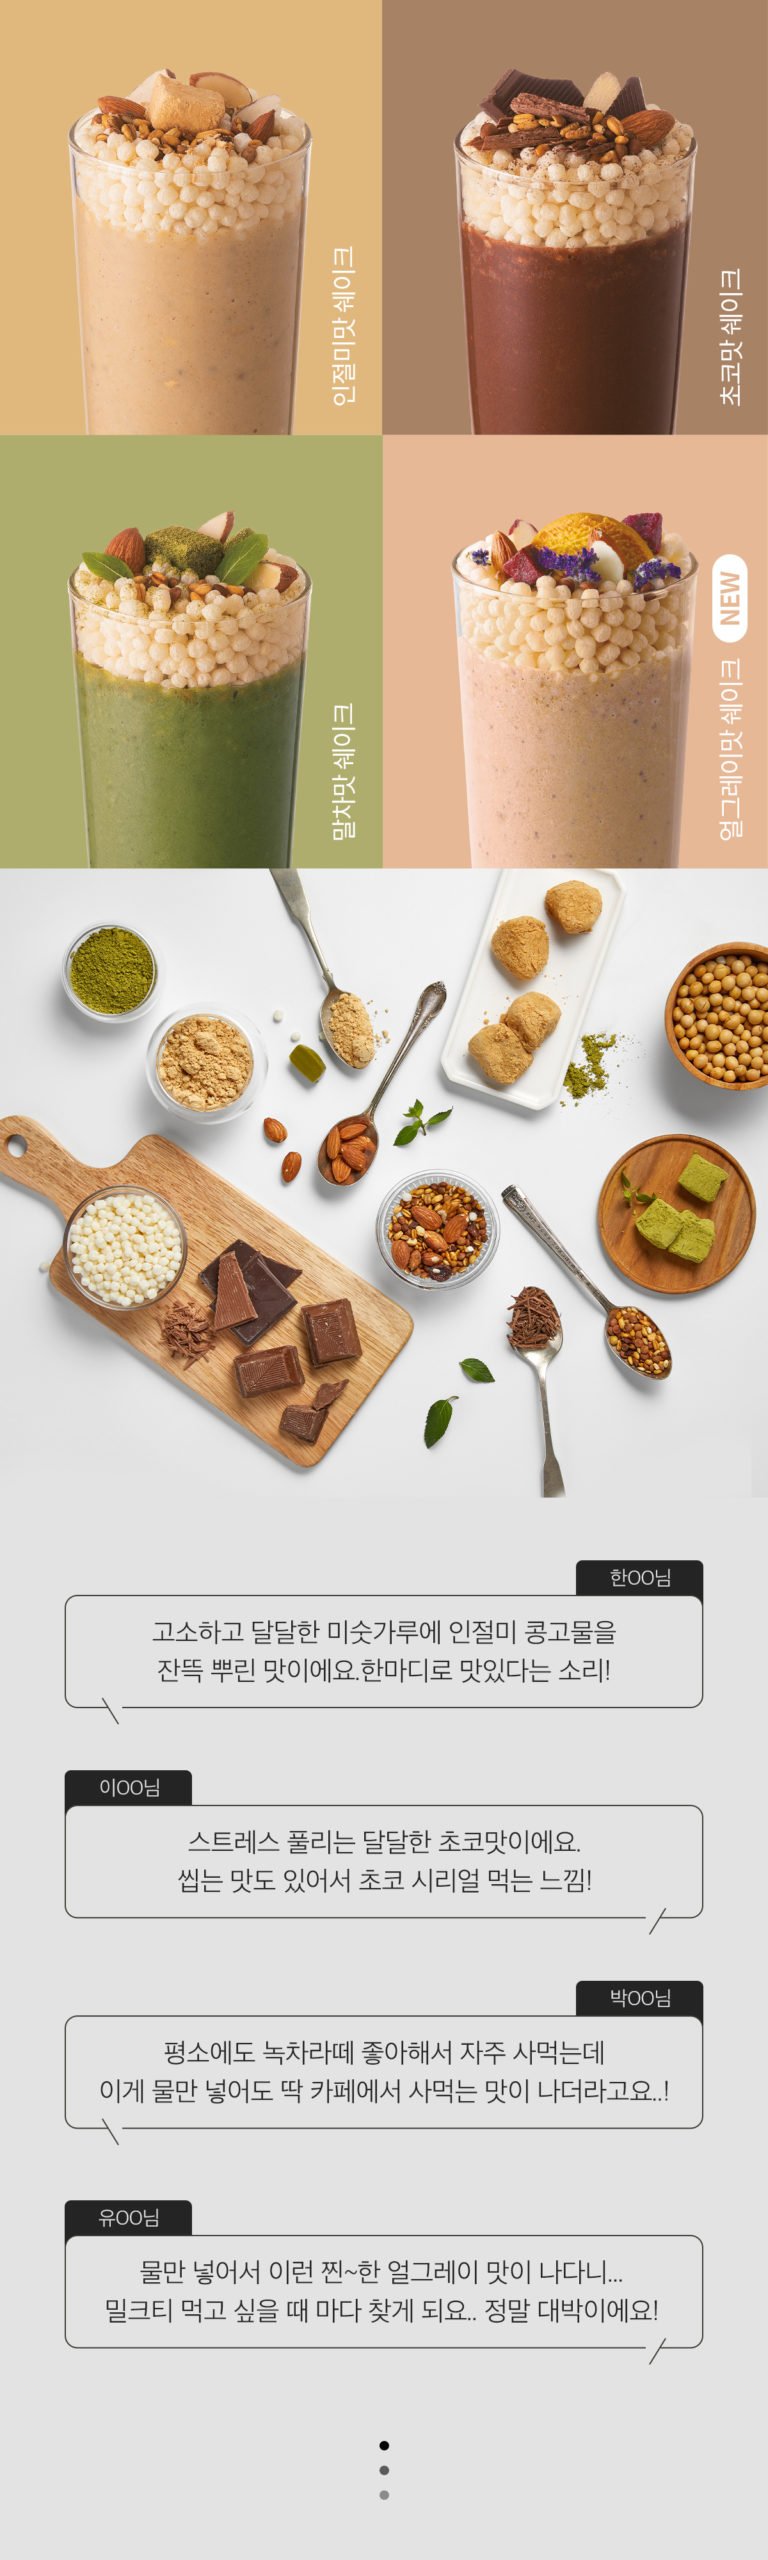 韓國食品-[GLAM.D] Meal Replacement Shake (Chocolate) 40g